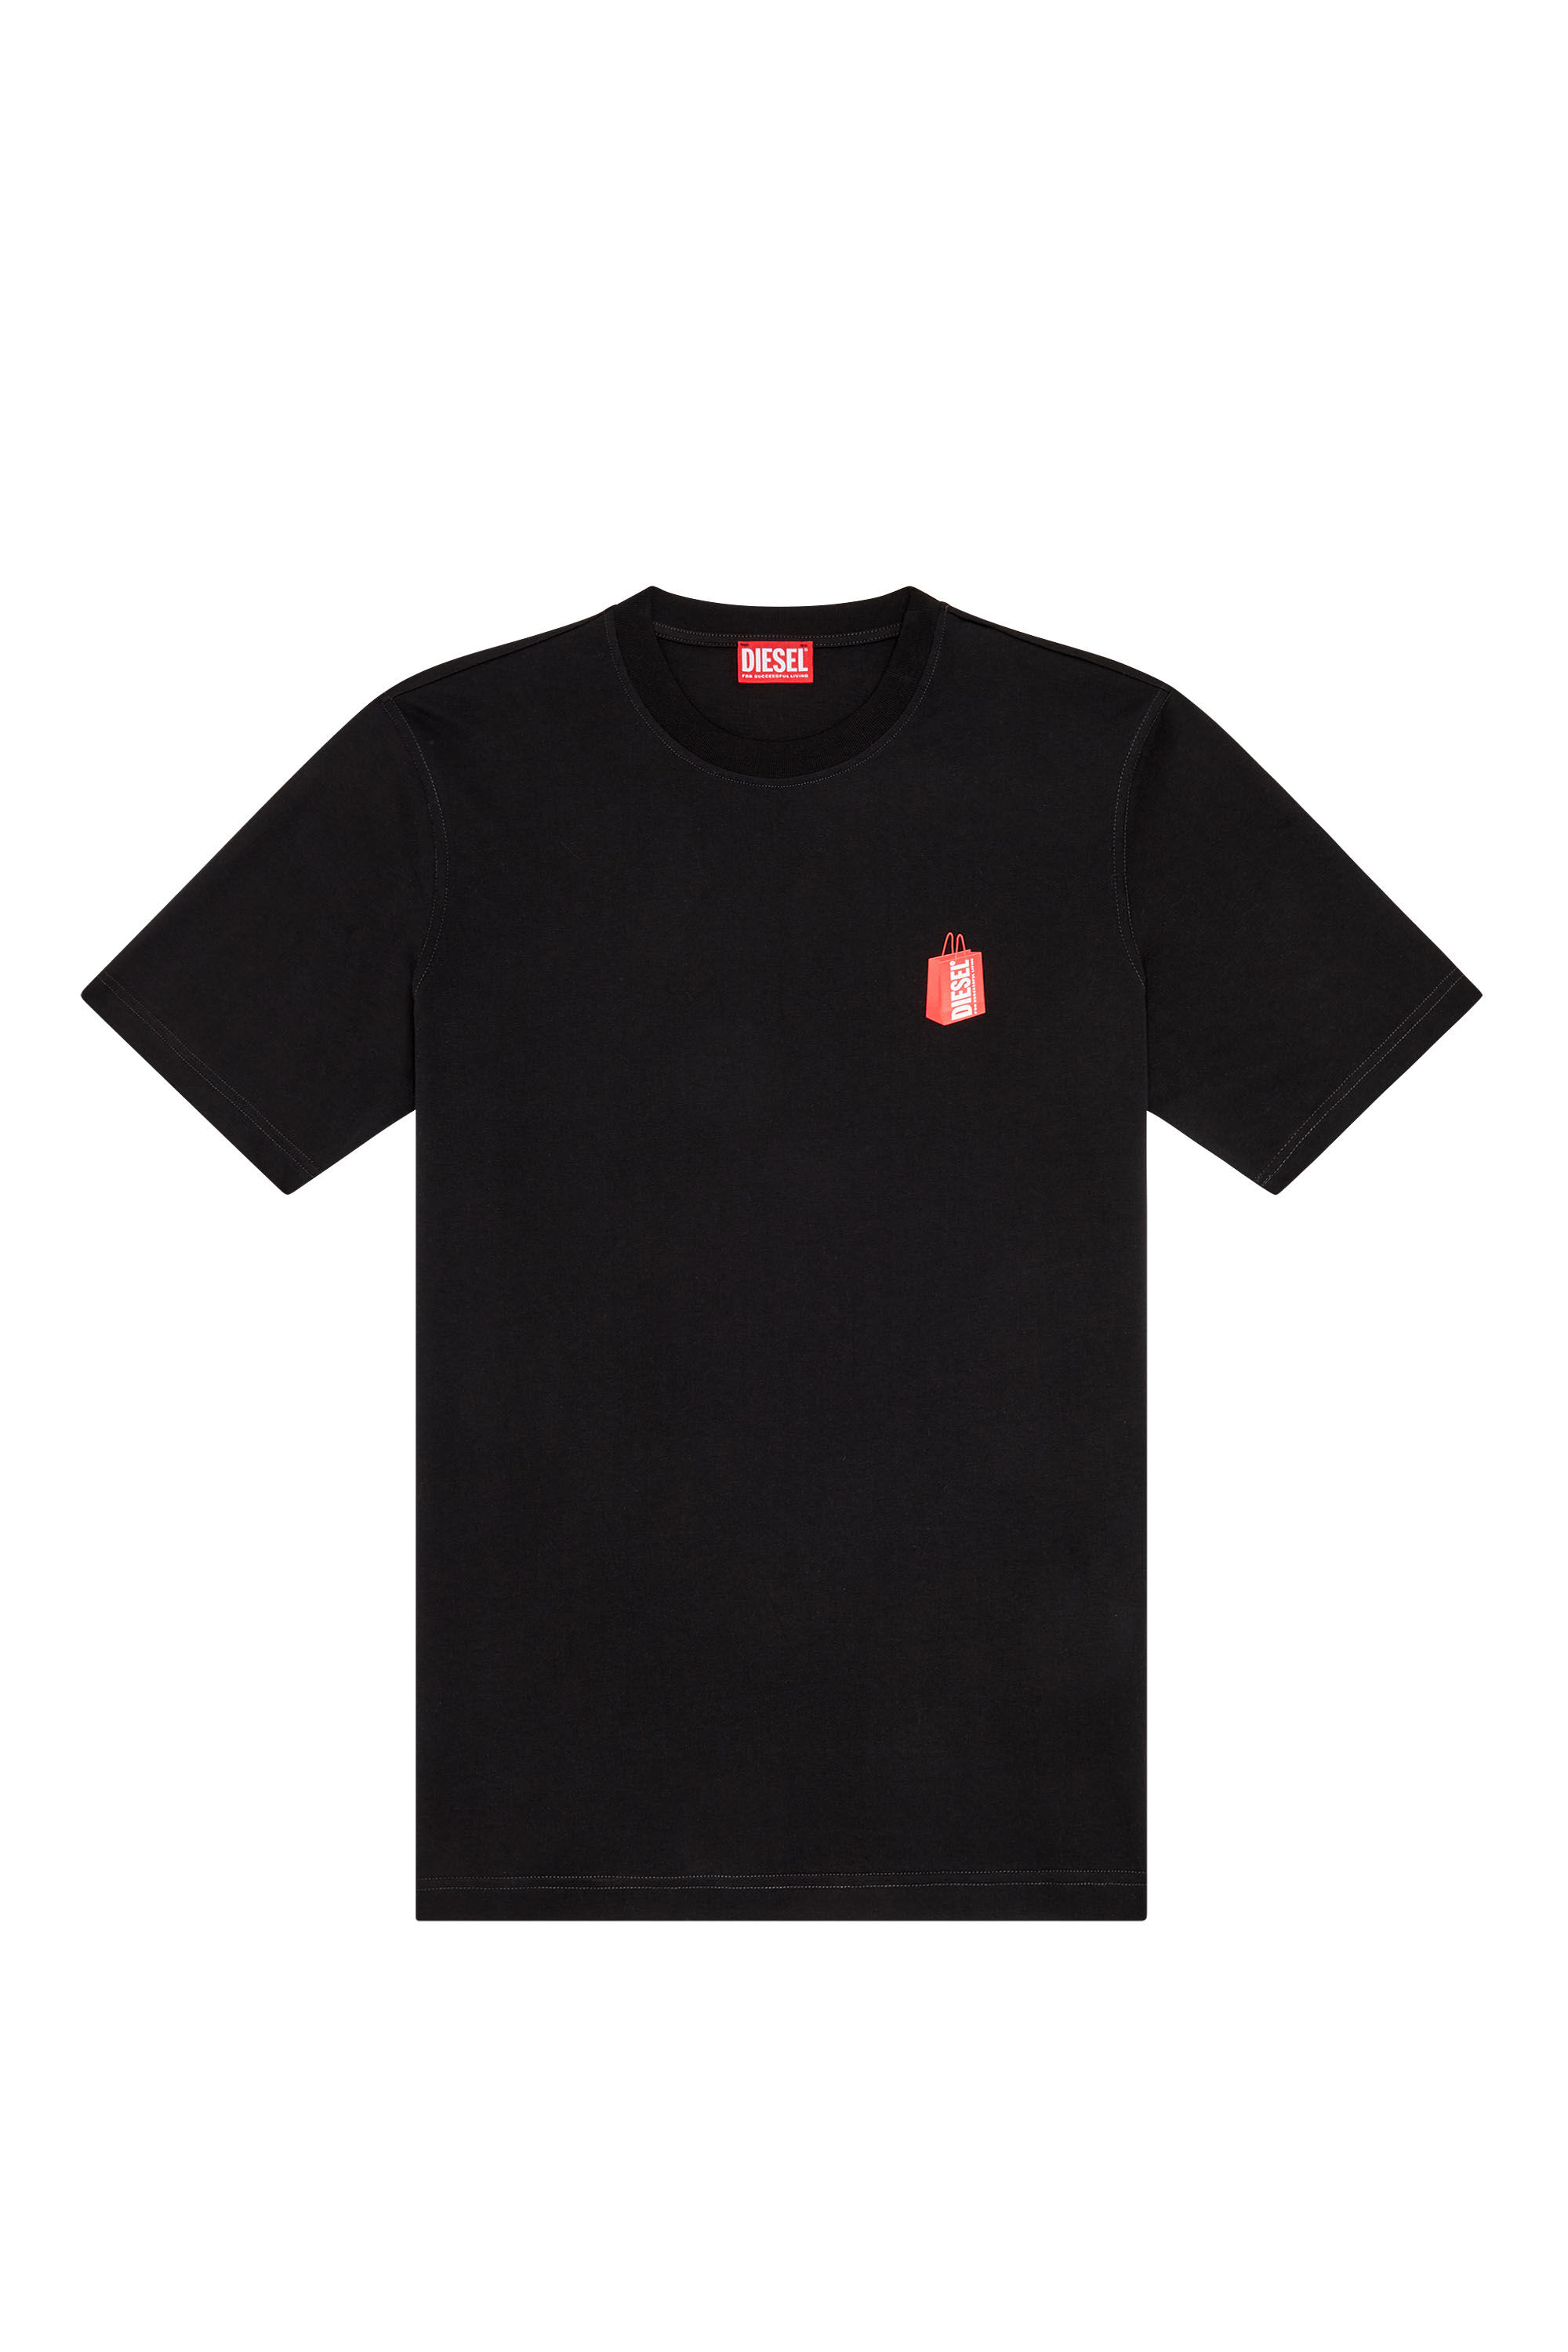 Diesel - T-JUST-N18, Man T-shirt with Diesel bag print in Black - Image 2